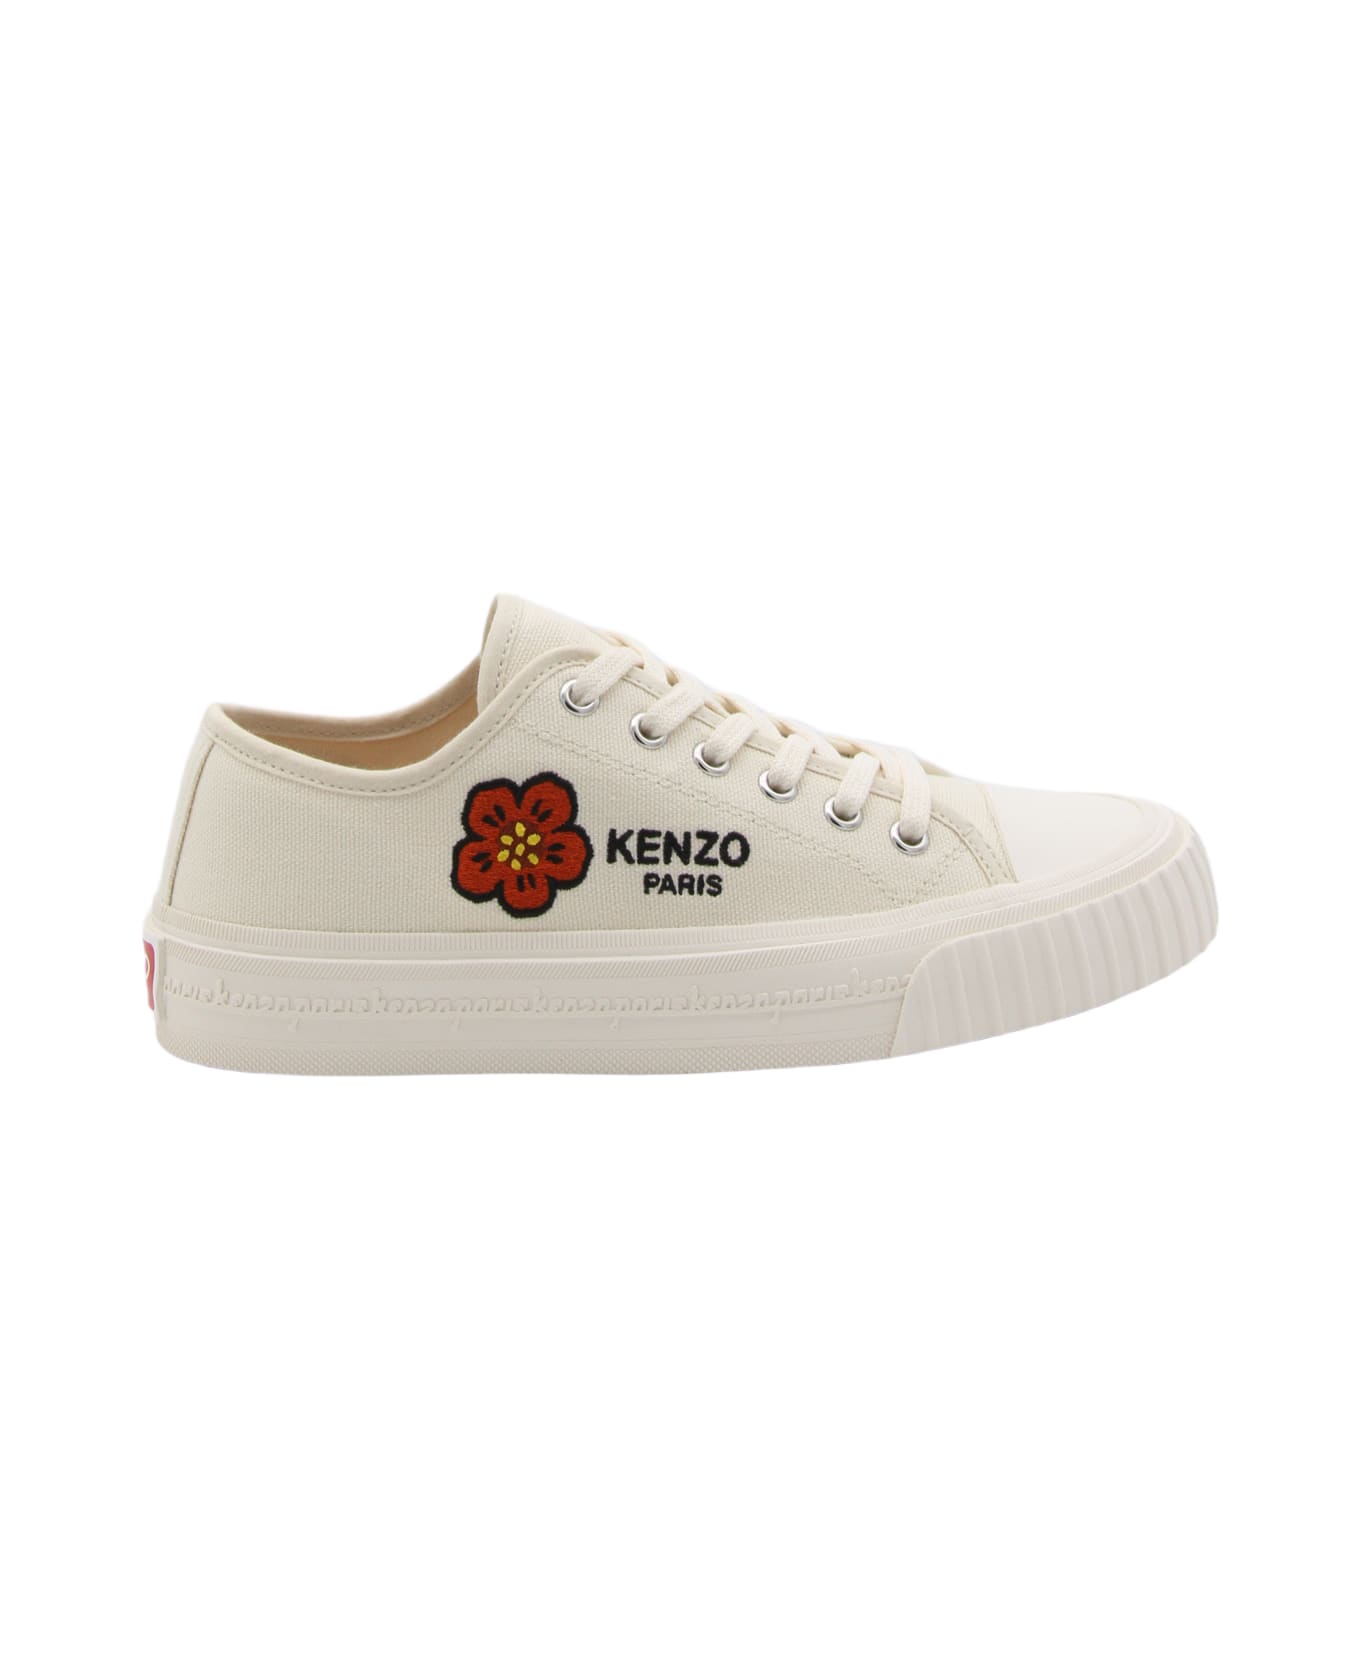 Kenzo School Low-top Sneakers - White スニーカー